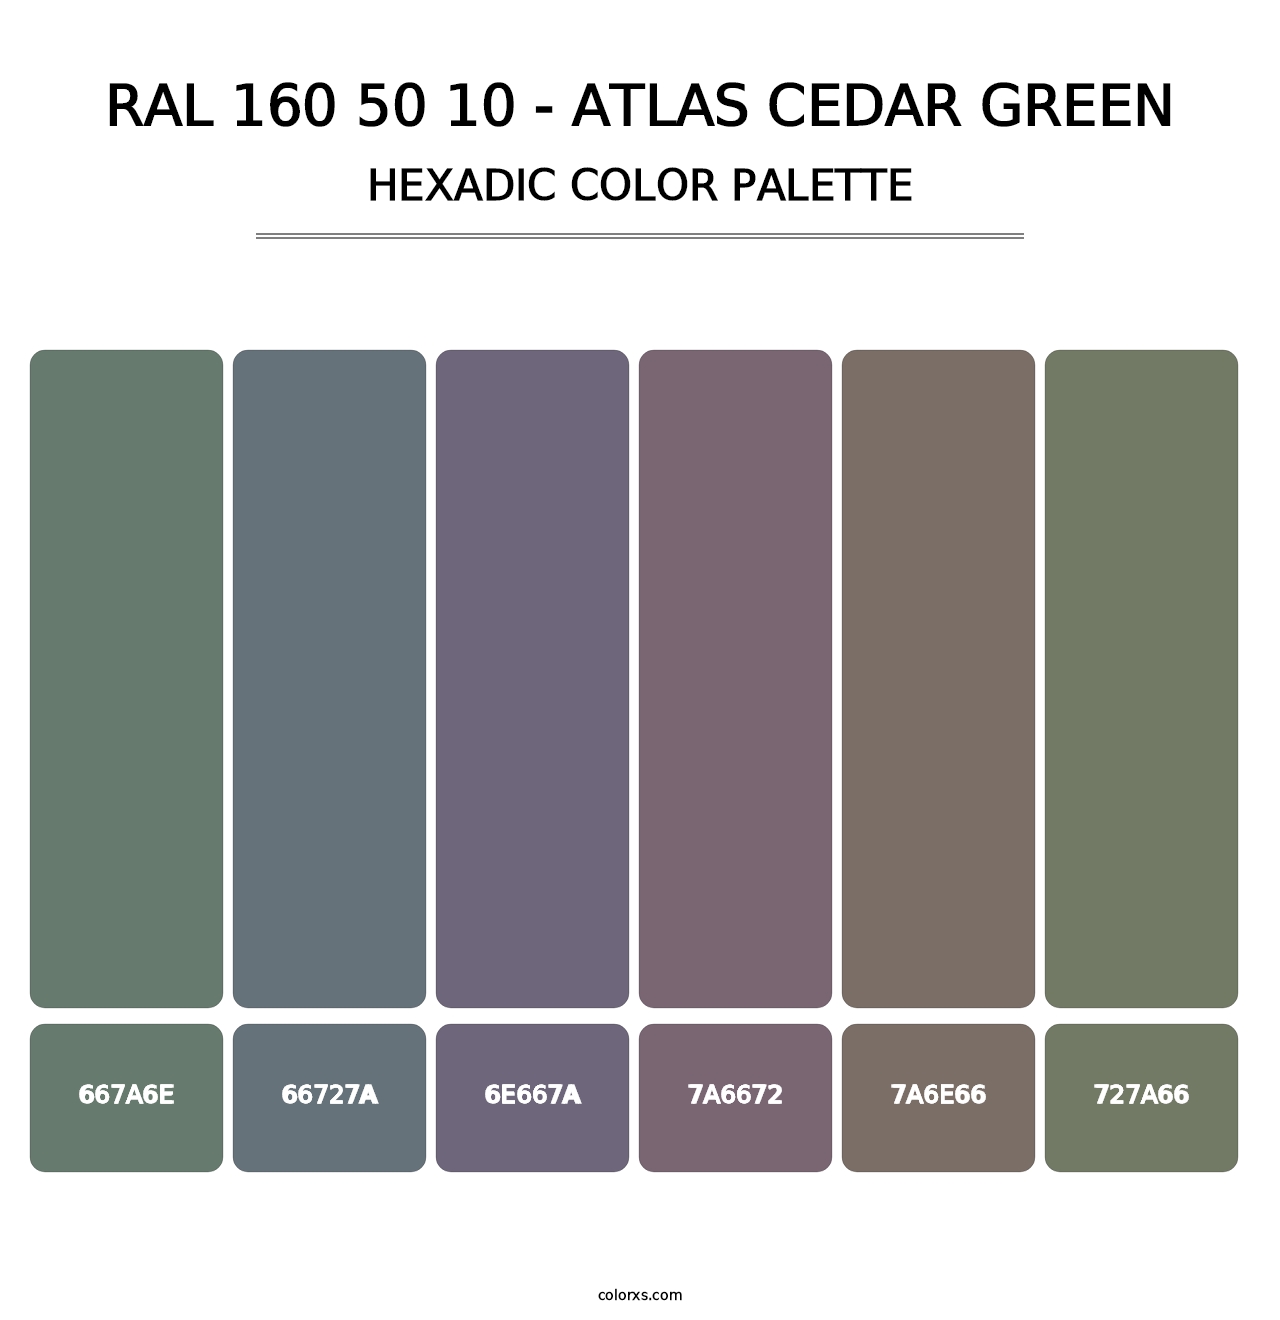 RAL 160 50 10 - Atlas Cedar Green - Hexadic Color Palette